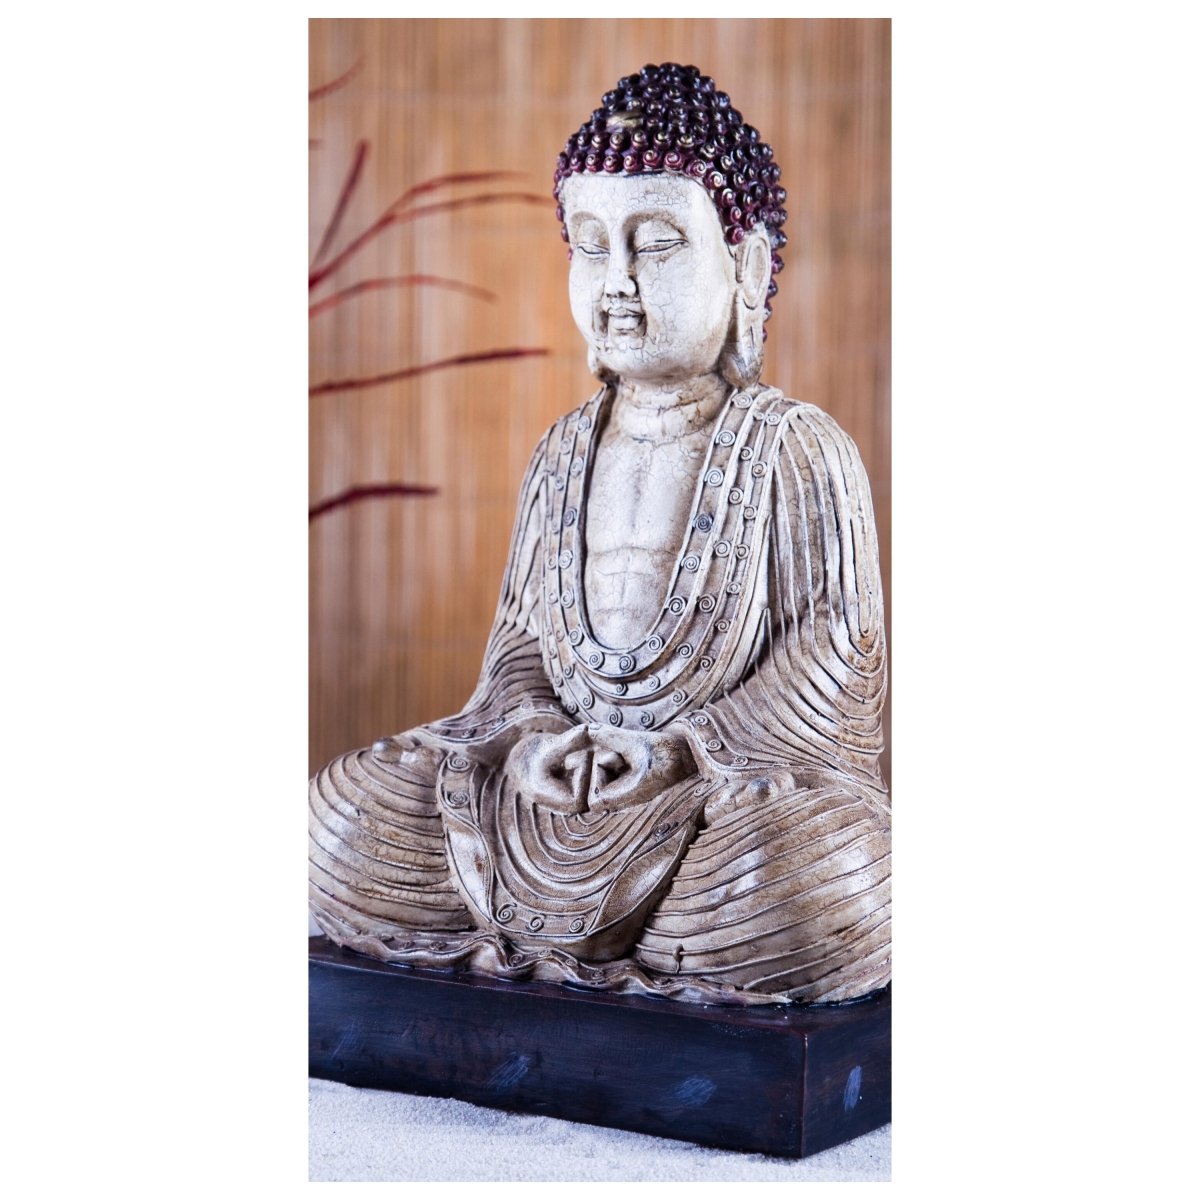 Türtapete Buddha-Statue und aromatische Kerzen M0969 - Bild 2